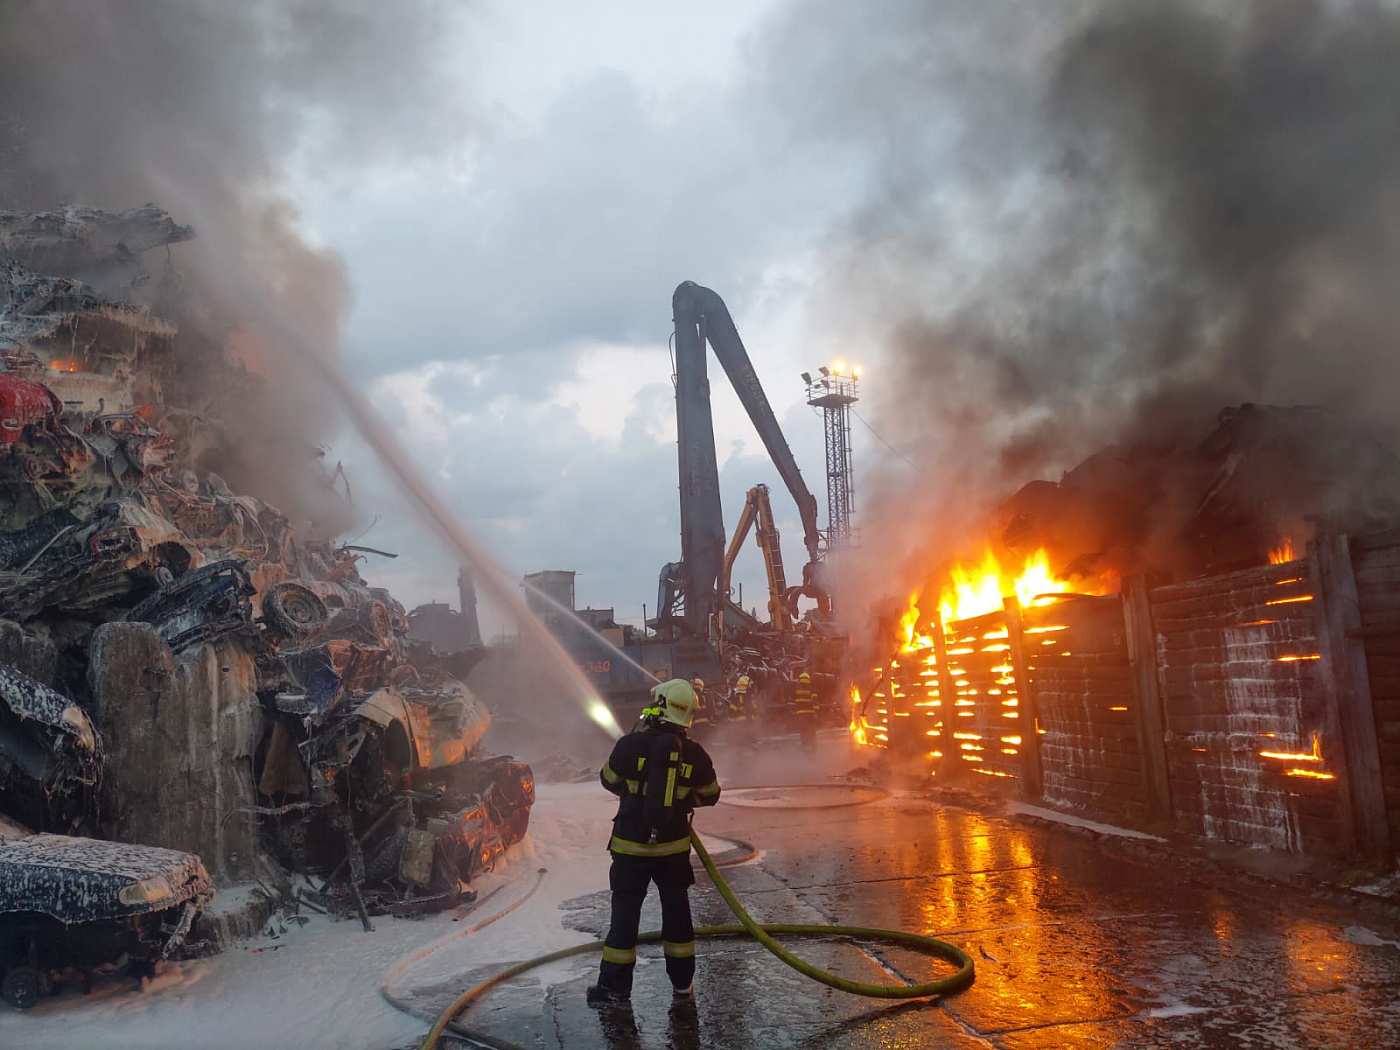 MSK_Požár vrakoviště v Mariánských Horách v Ostravě_pohled na zasahující hasiče a hořící hromady aut.jpg